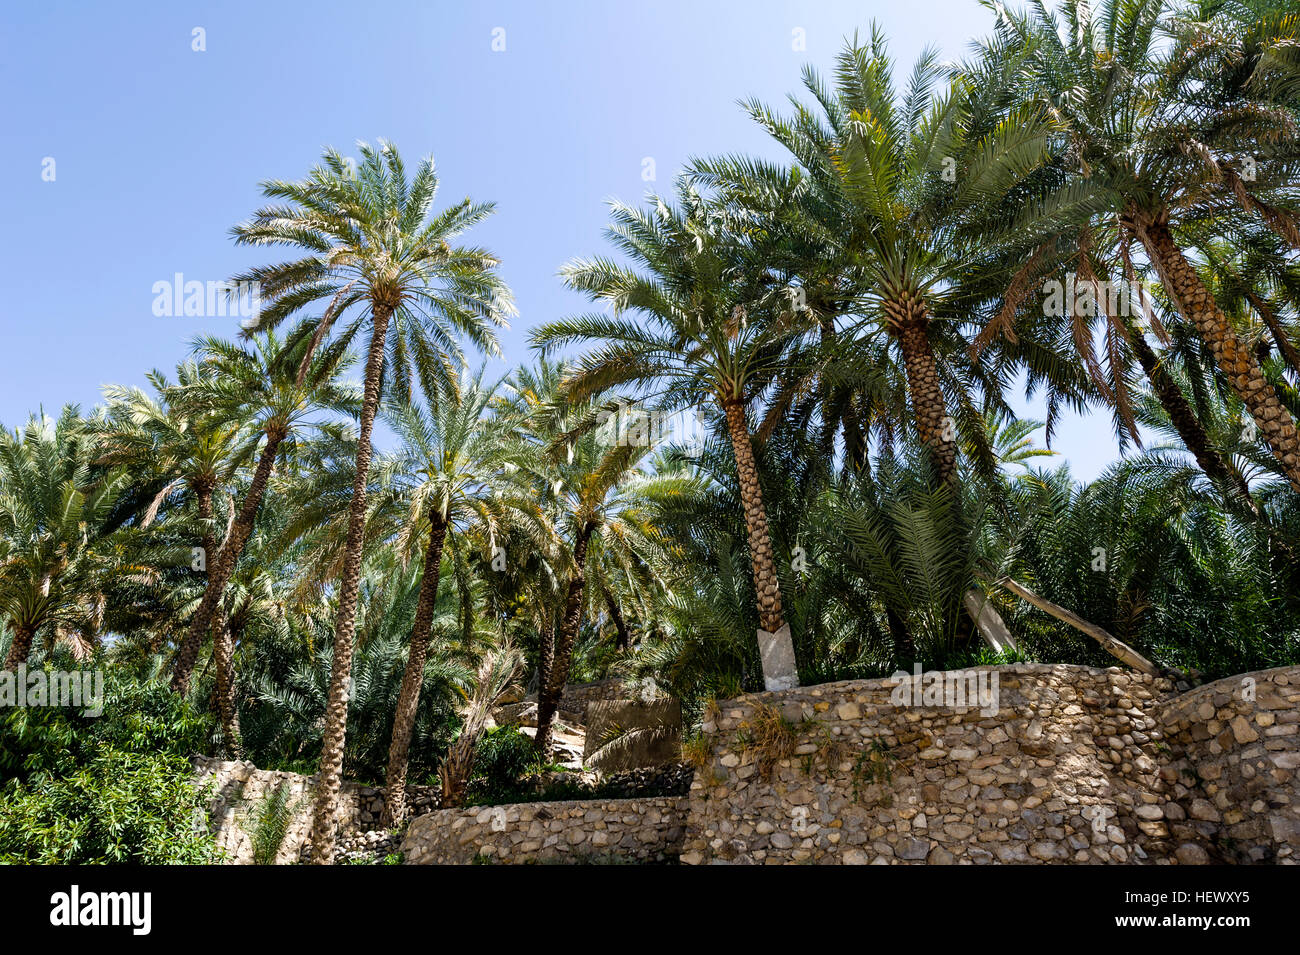 Palmiers poussent sur wlled jardins en terrasse près de la côte d'un wadi. Banque D'Images